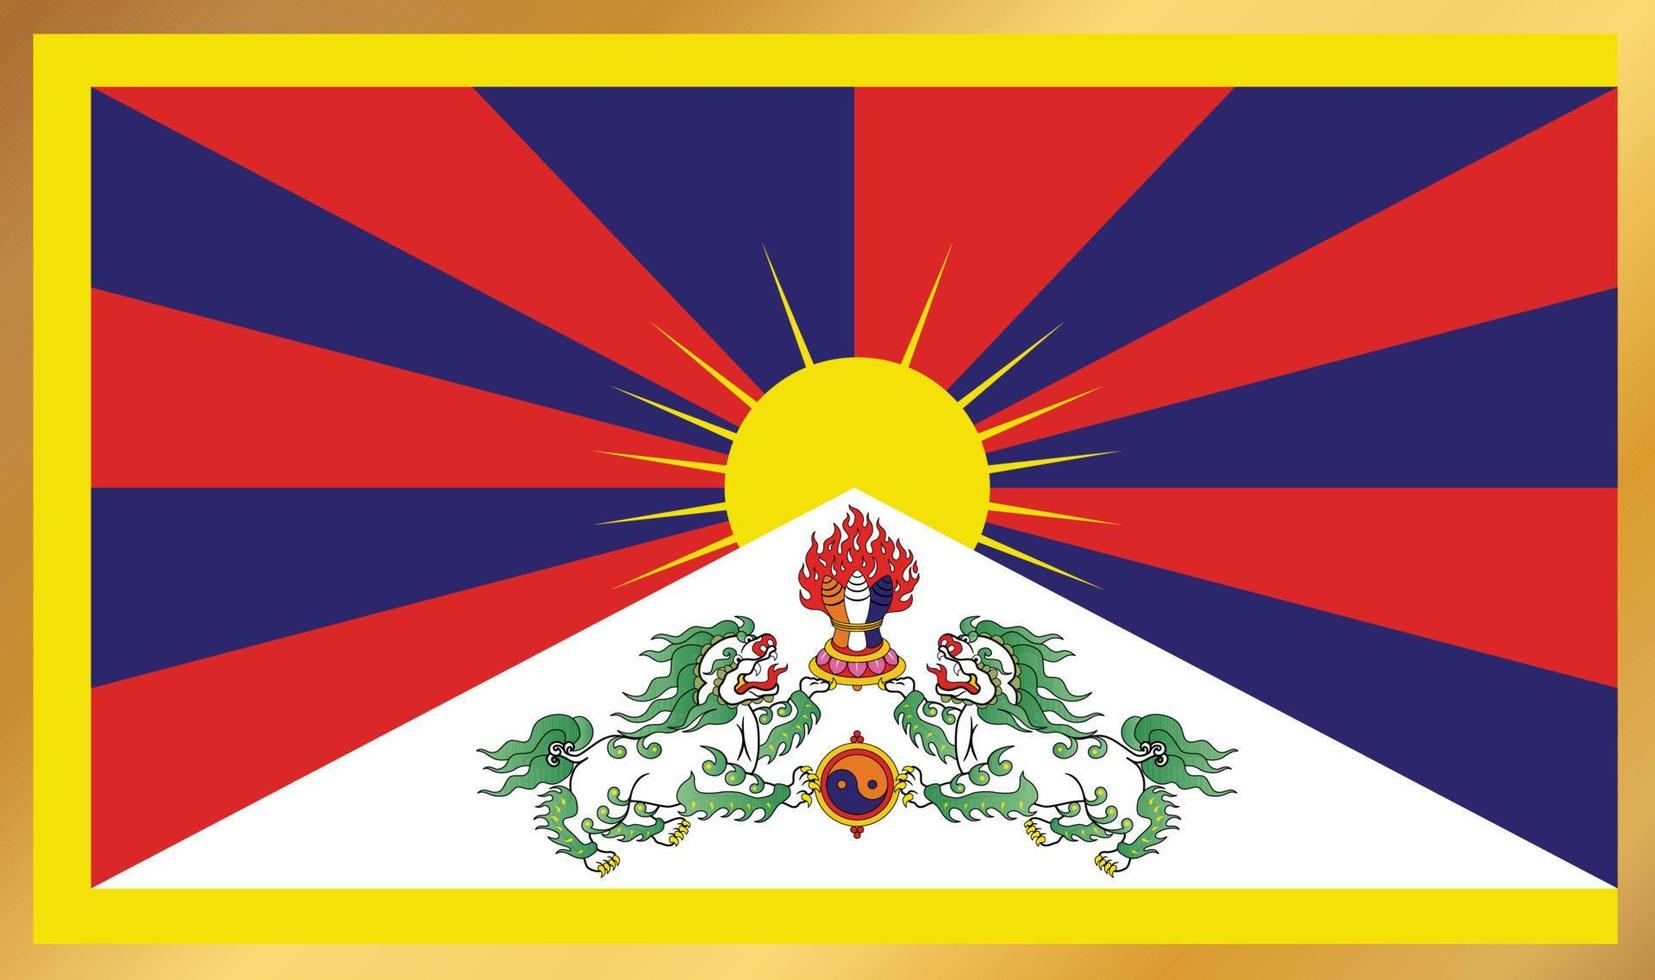 tibet flag, vector illustration